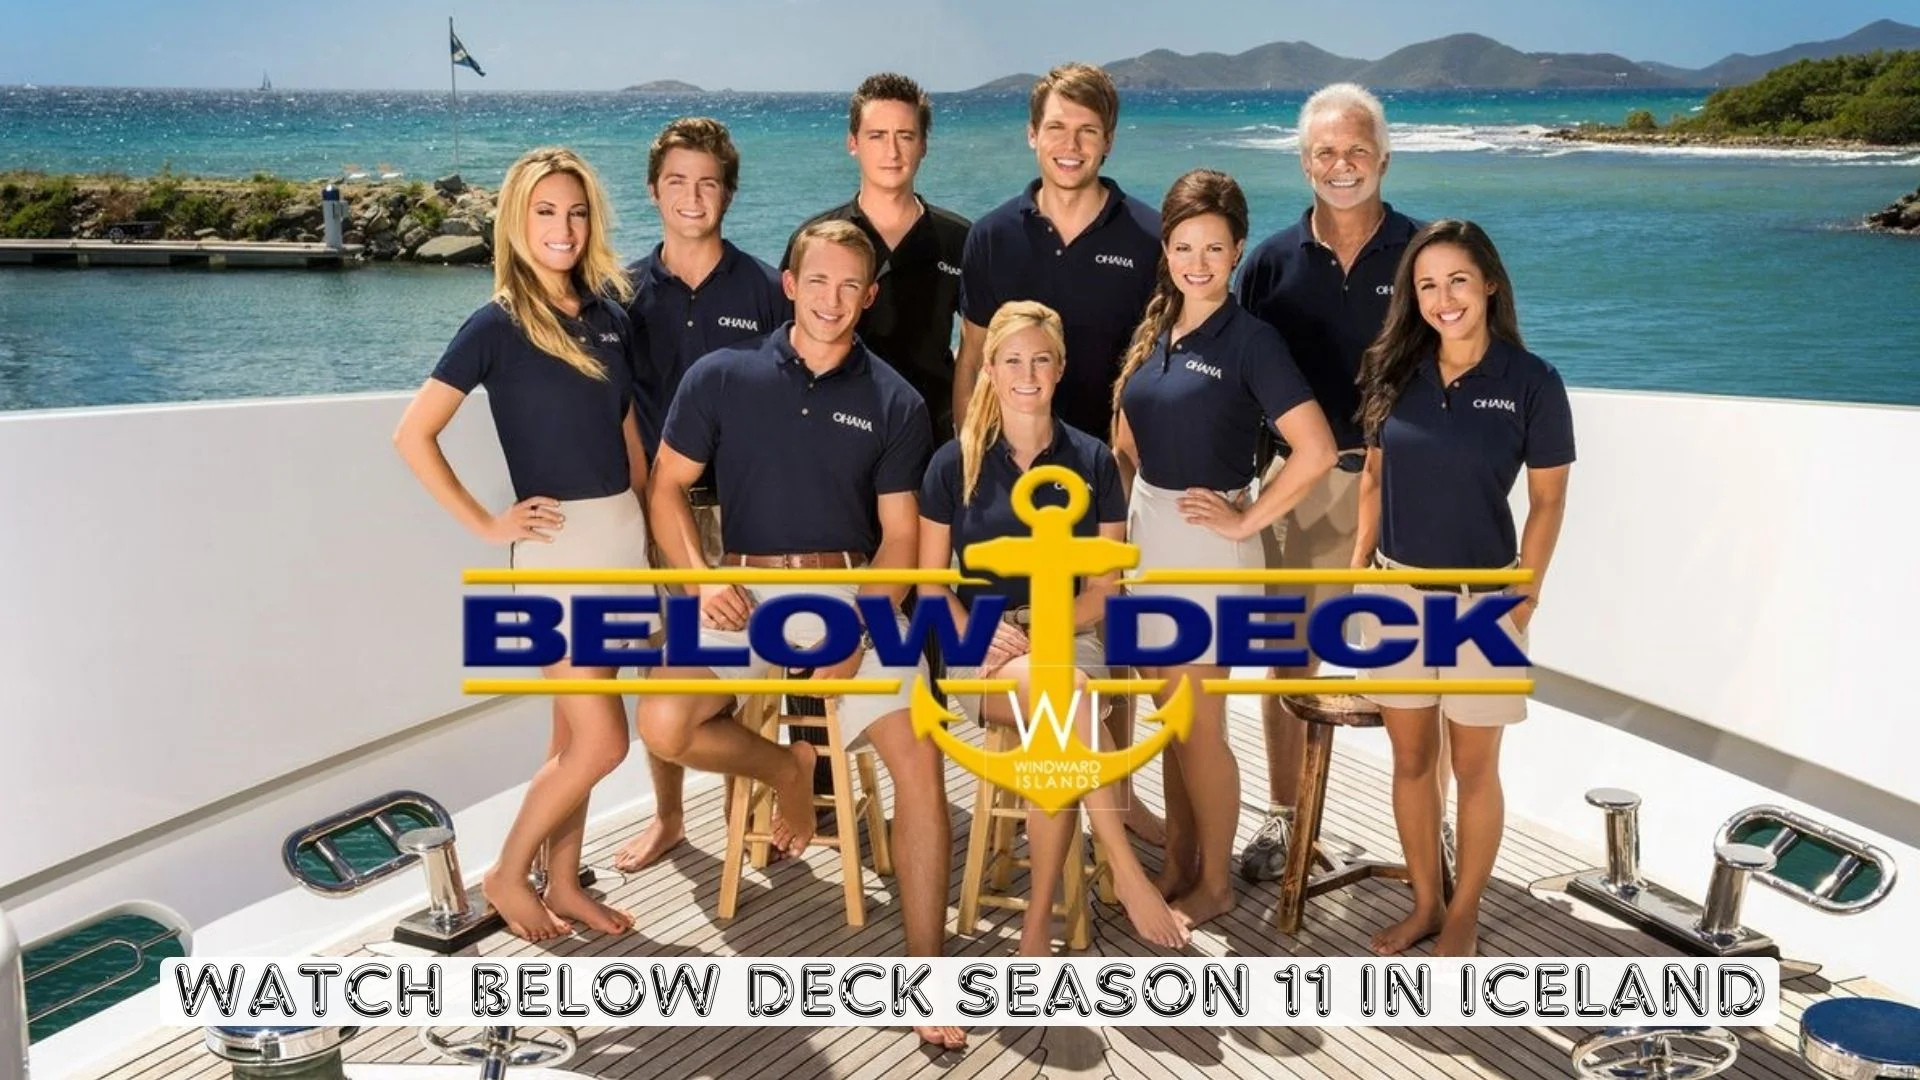 Watch Below Deck Season 11 in Iceland